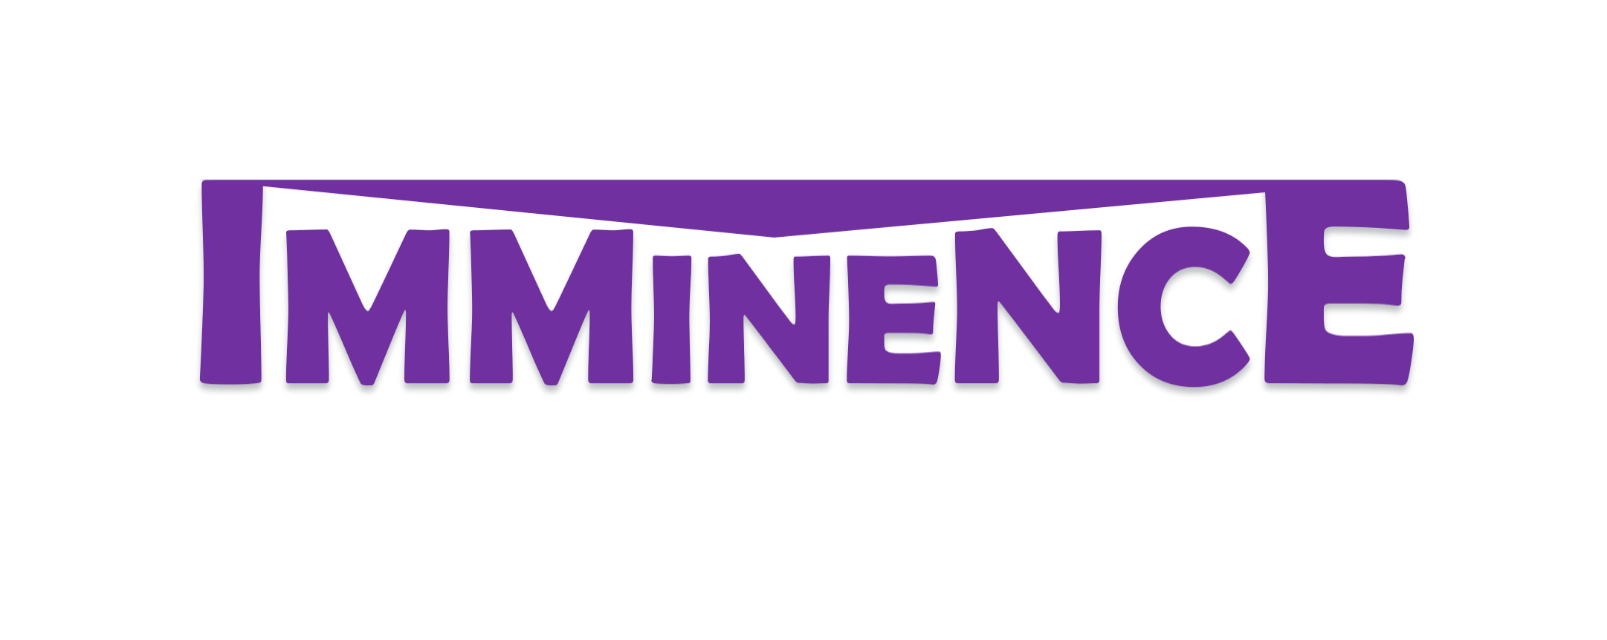 imminence-logo